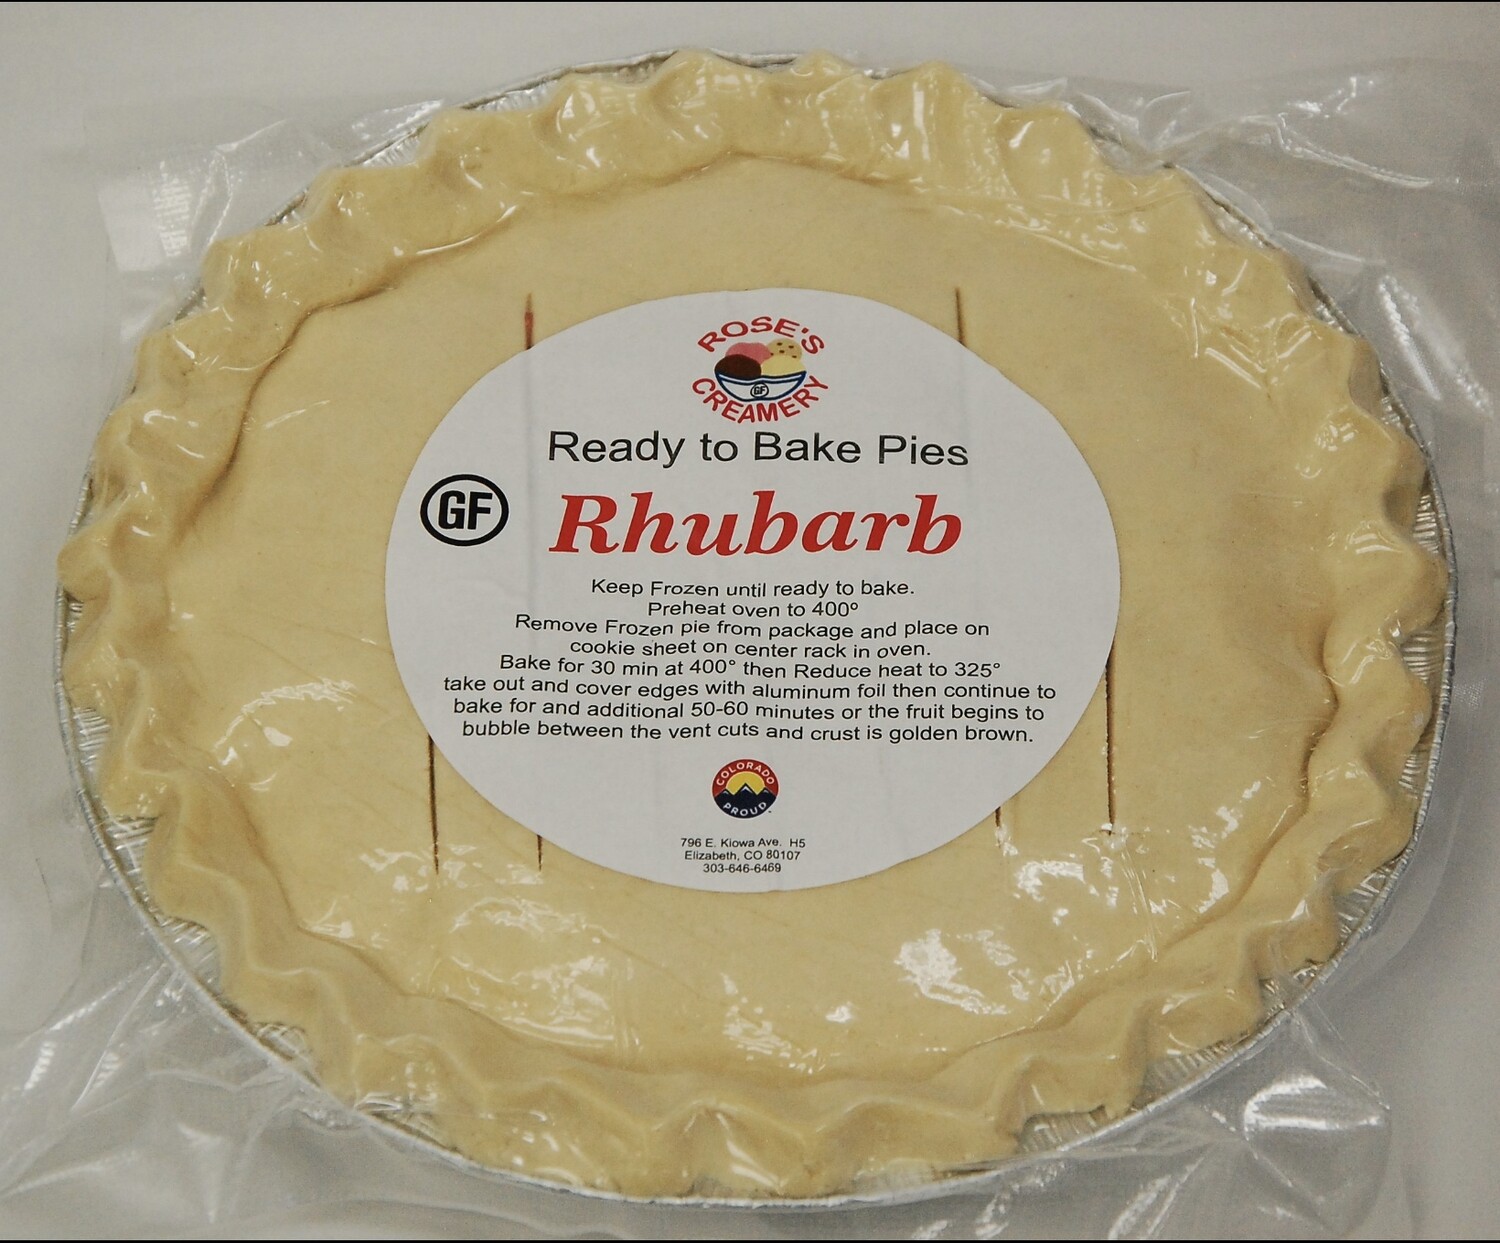 Roses GF Rhubarb Pie